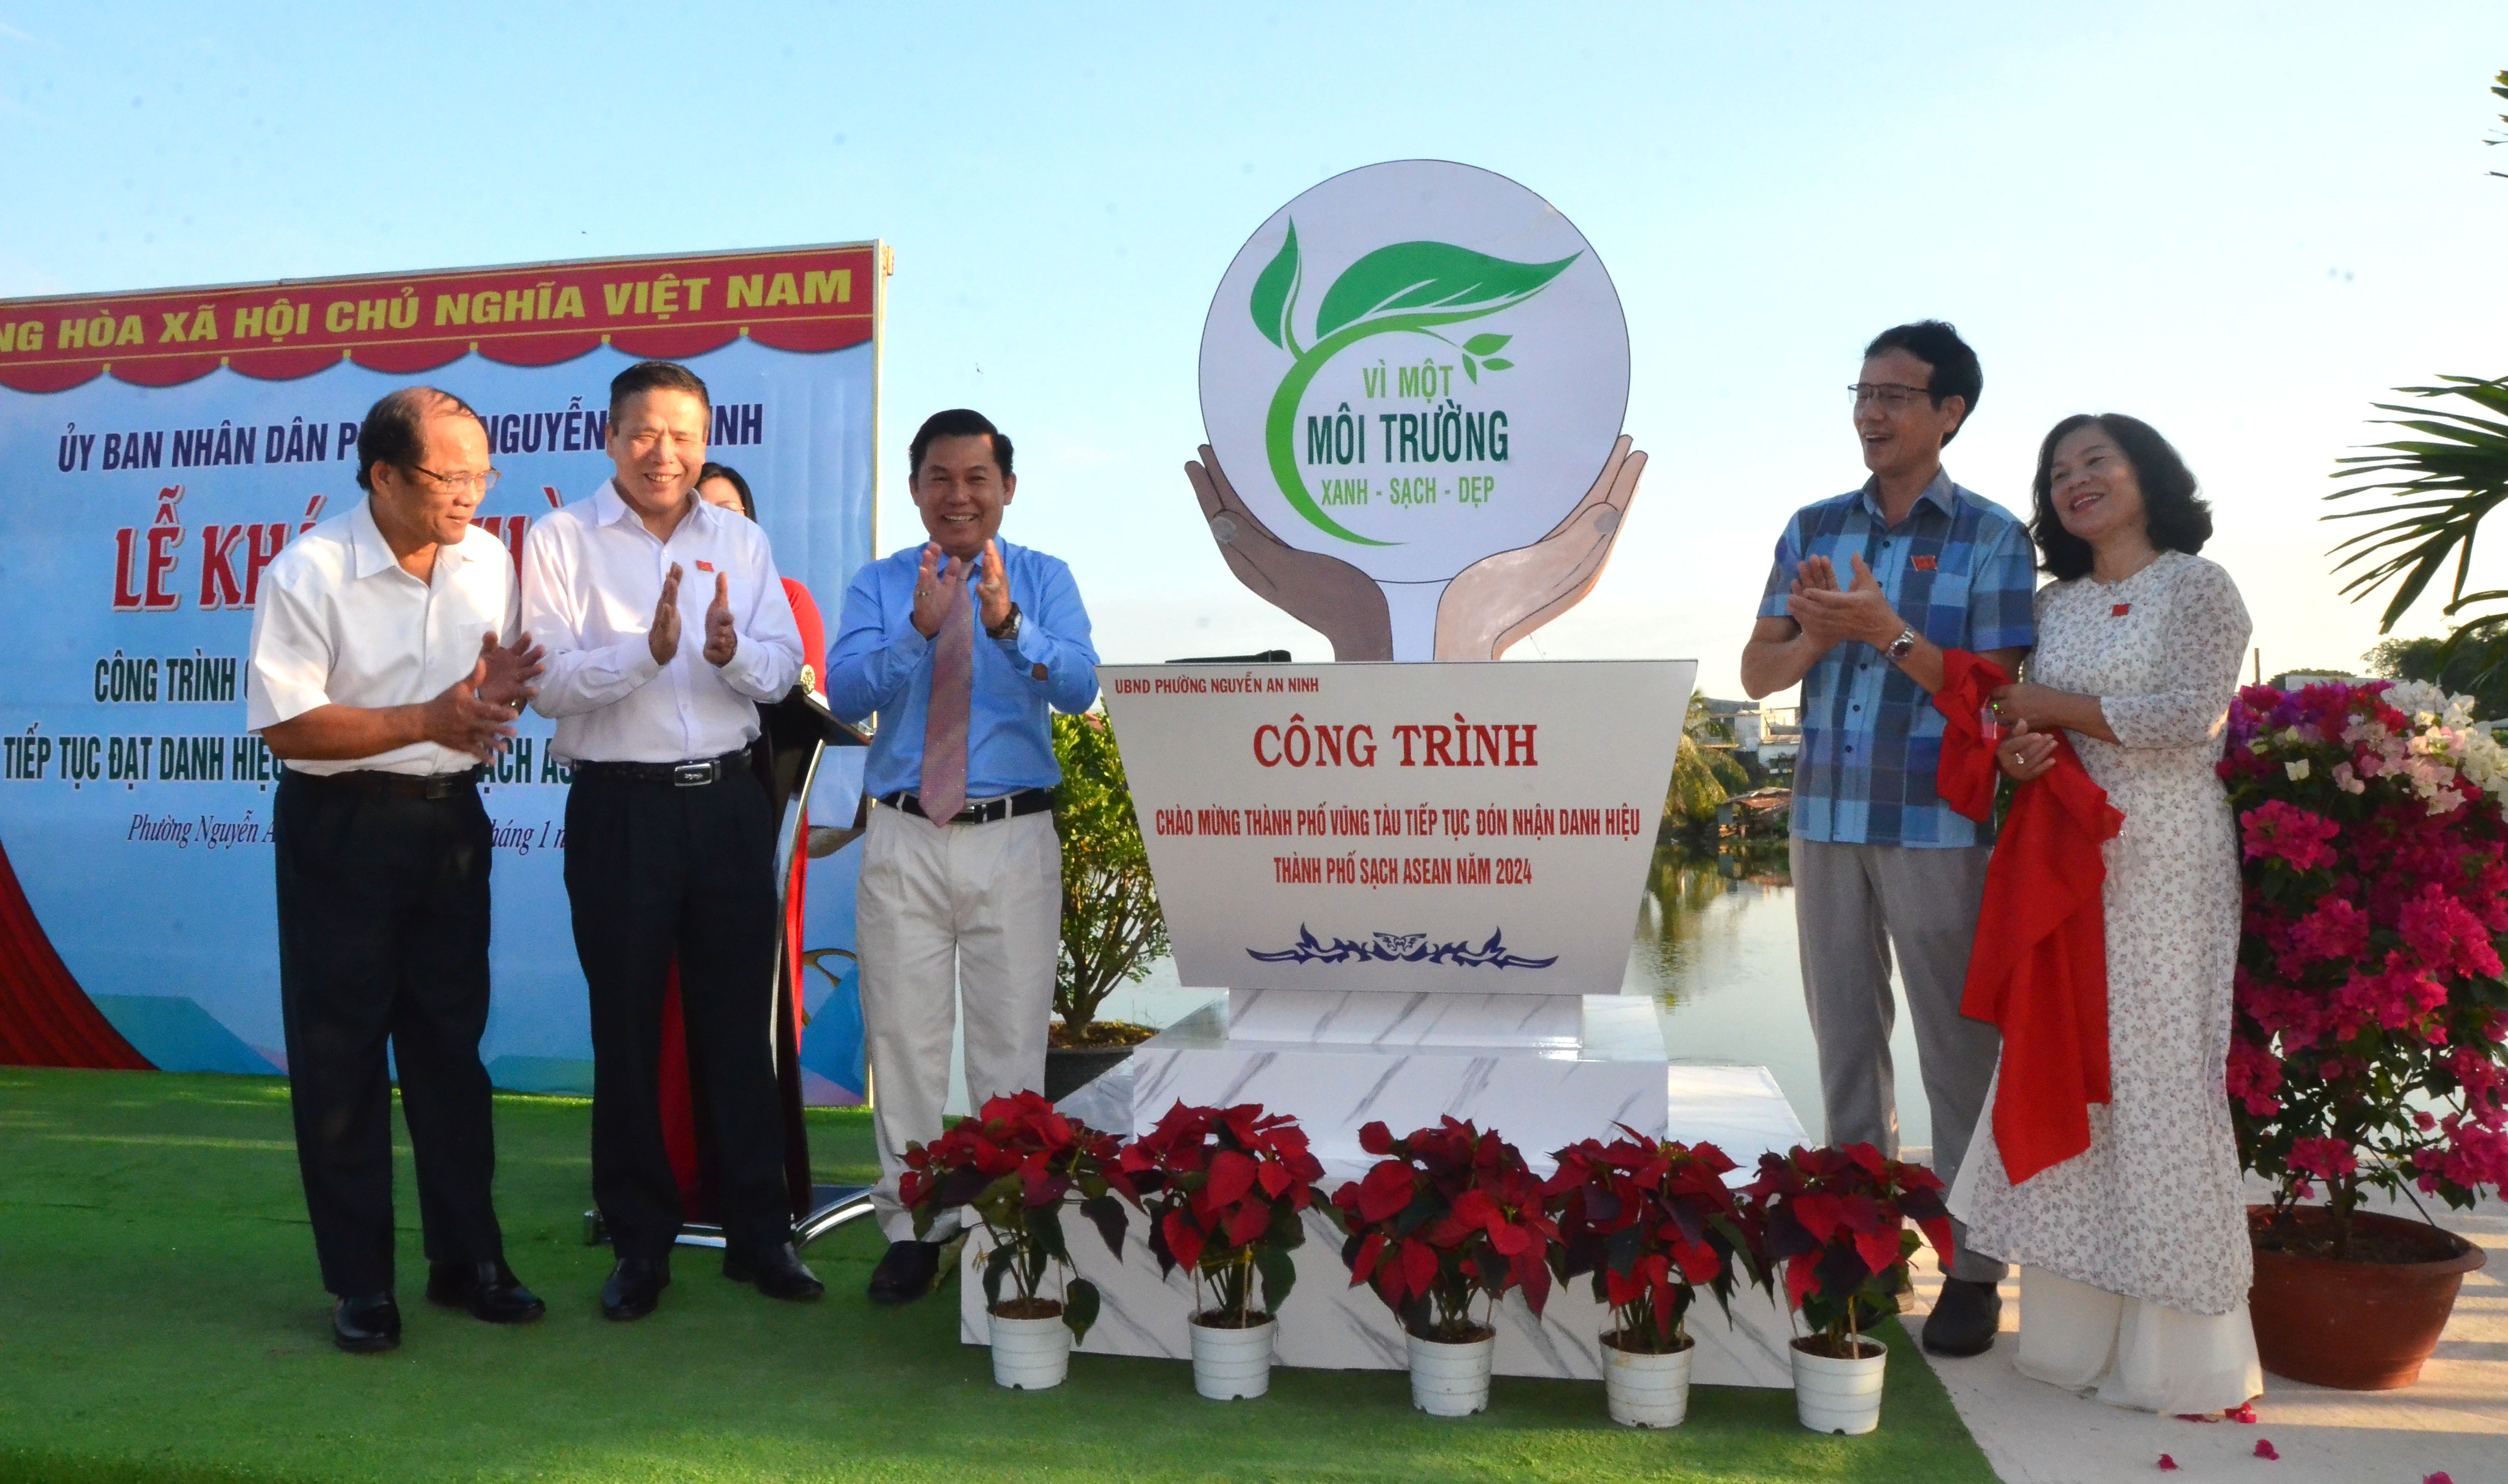 Đại diện lãnh đạo thành phố và lãnh đạo phường Nguyễn An Ninh tháo băng khánh thành công trình.